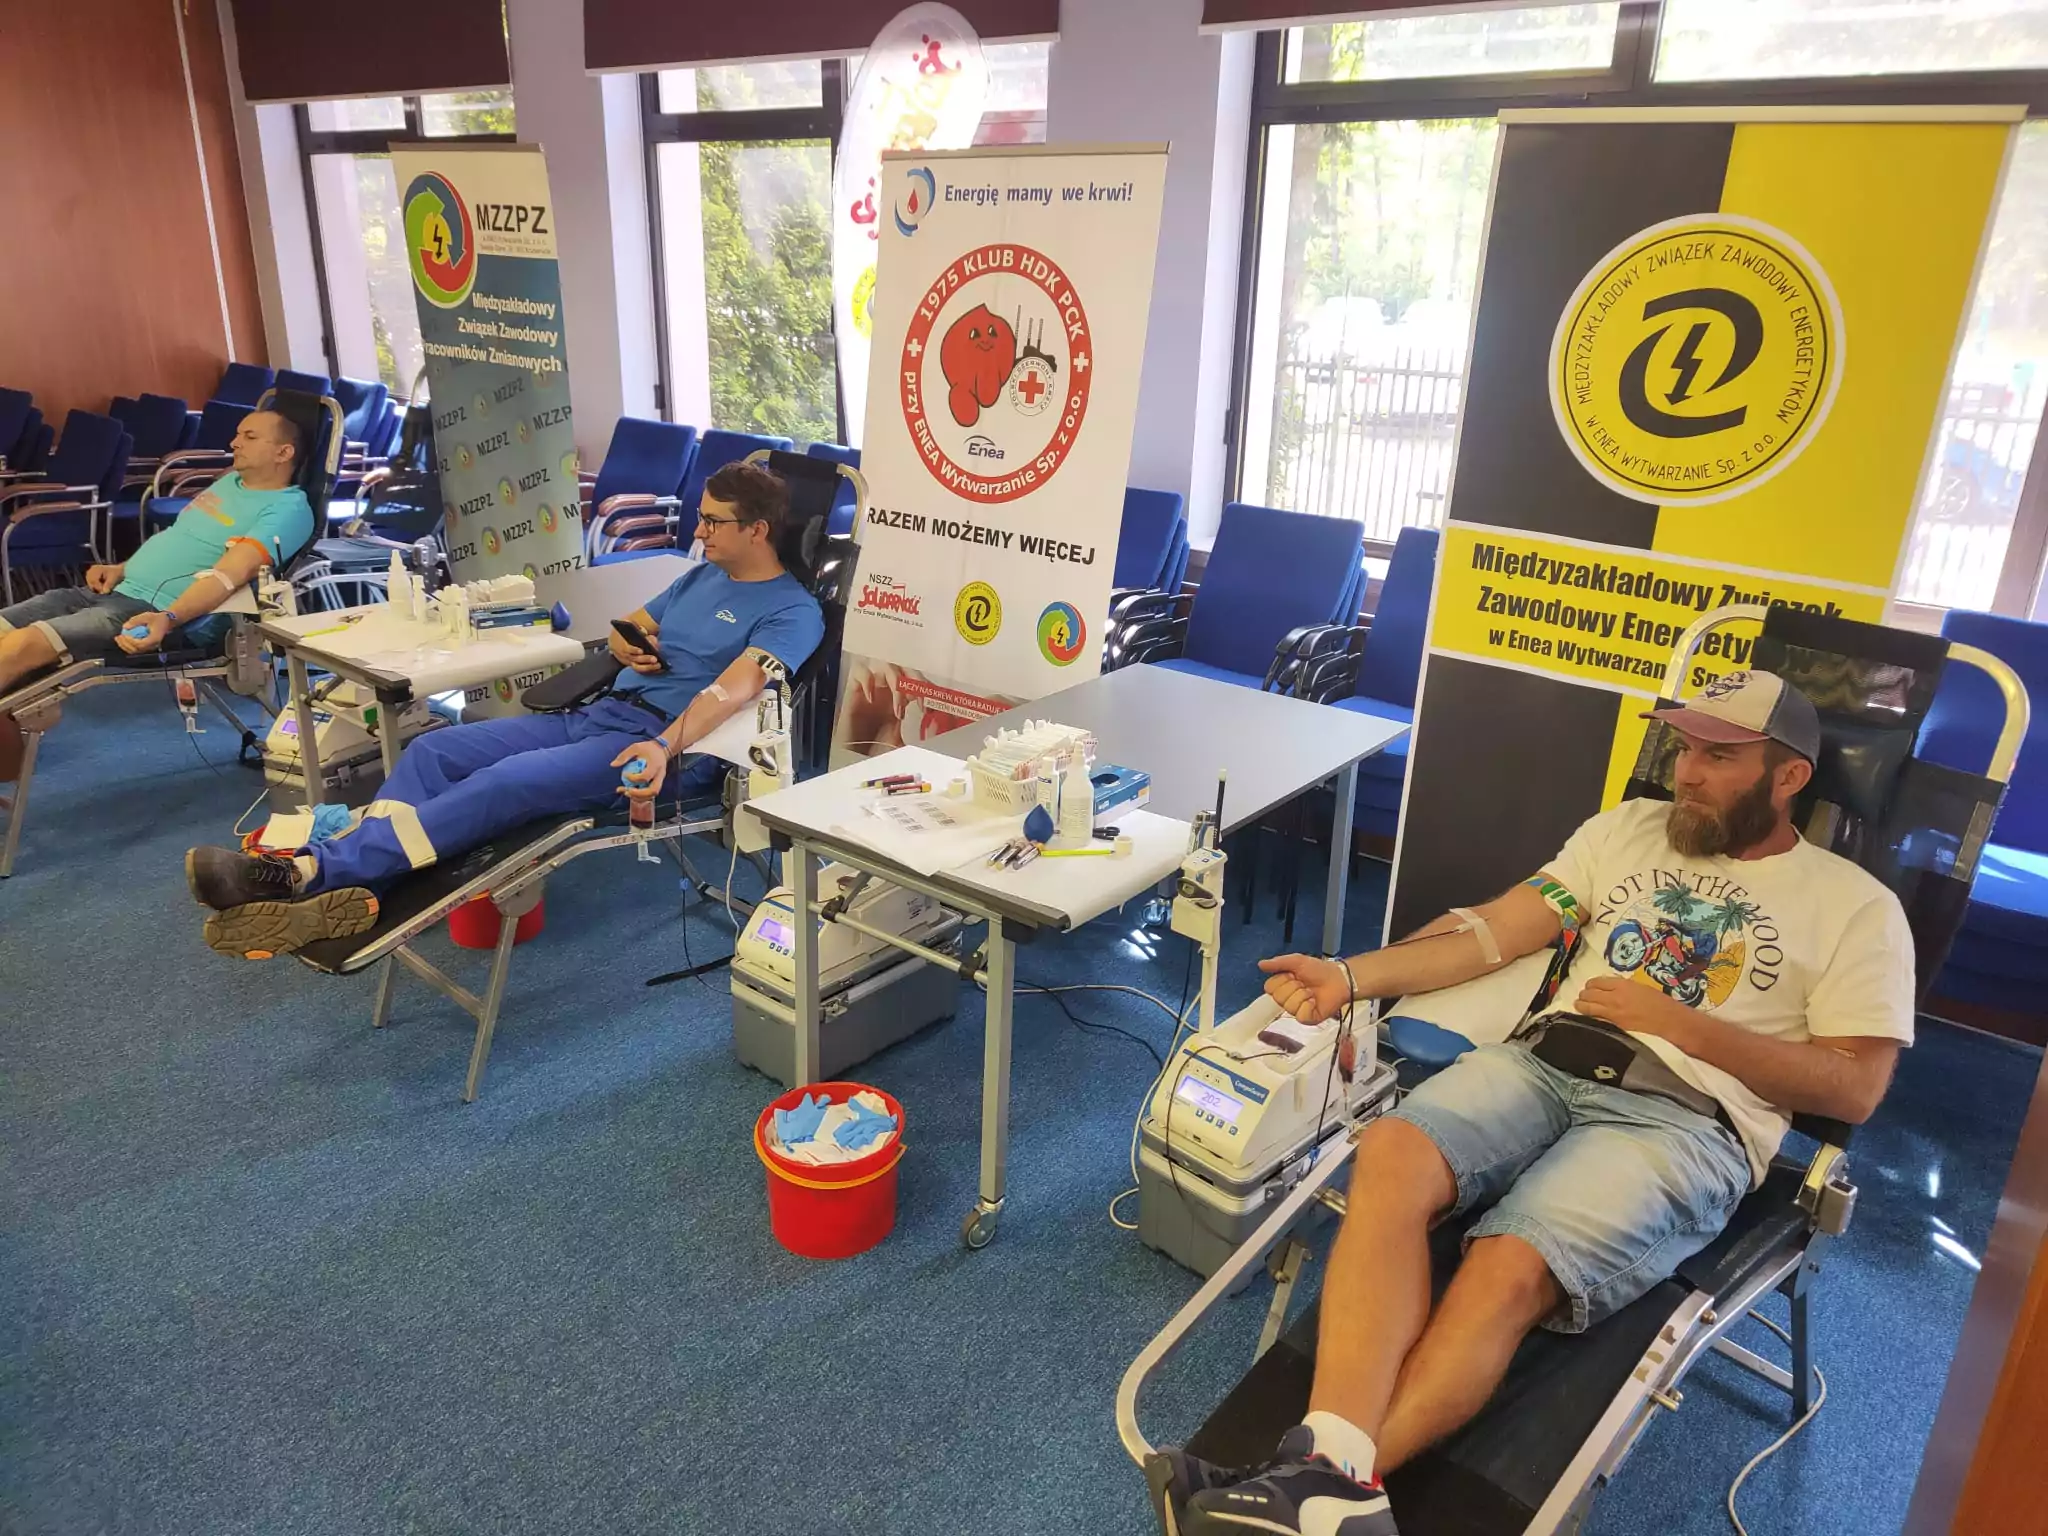 Ponad 15 litrów krwi oddali w piątek, 7 lipca pracownicy Elektrowni Kozienice. Była to już czwarta akcja zorganizowana na terenie spółki w tym roku w ramach programu "Energię mamy we krwi", w który zaangażowana jest cała Grupa Enea.